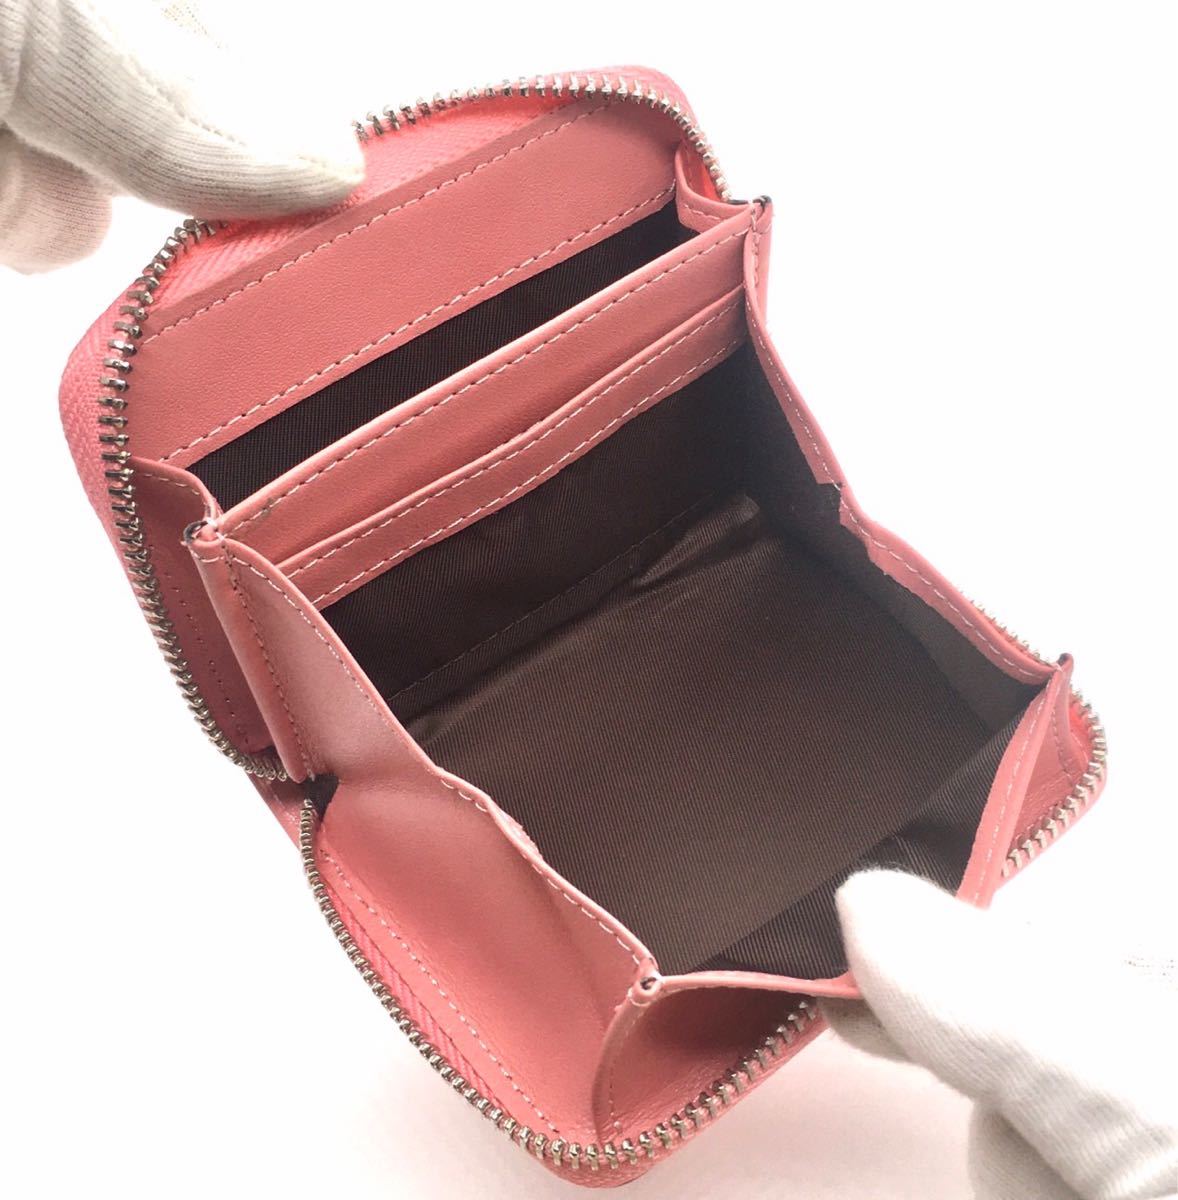 ミニ財布 コインケース カードケース 小銭入れ メンズ レディース ボックス型 レザー財布 コンパクト財布 本革 ピンク